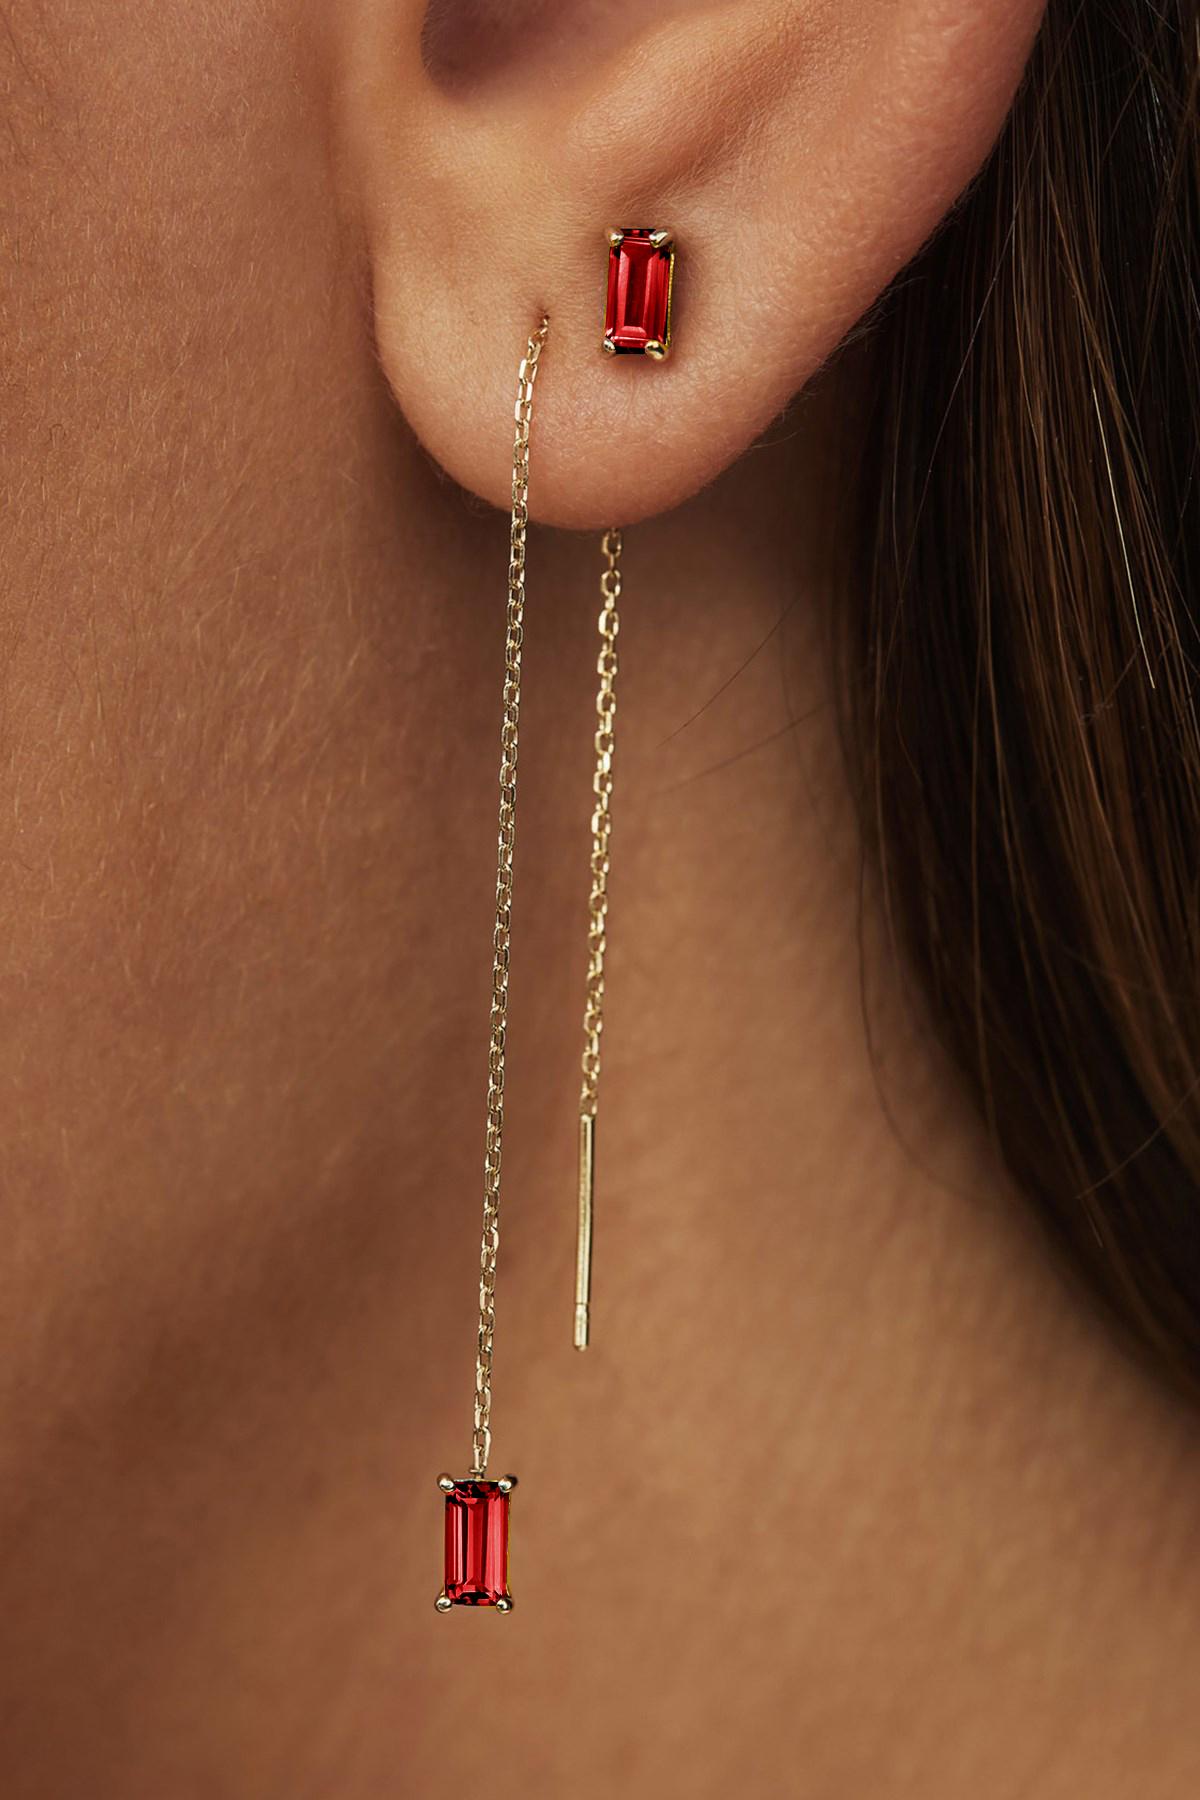 Baguette Cut 14k Solid Gold Drop Earrings with Garnet, Chain Gold Earrings For Sale